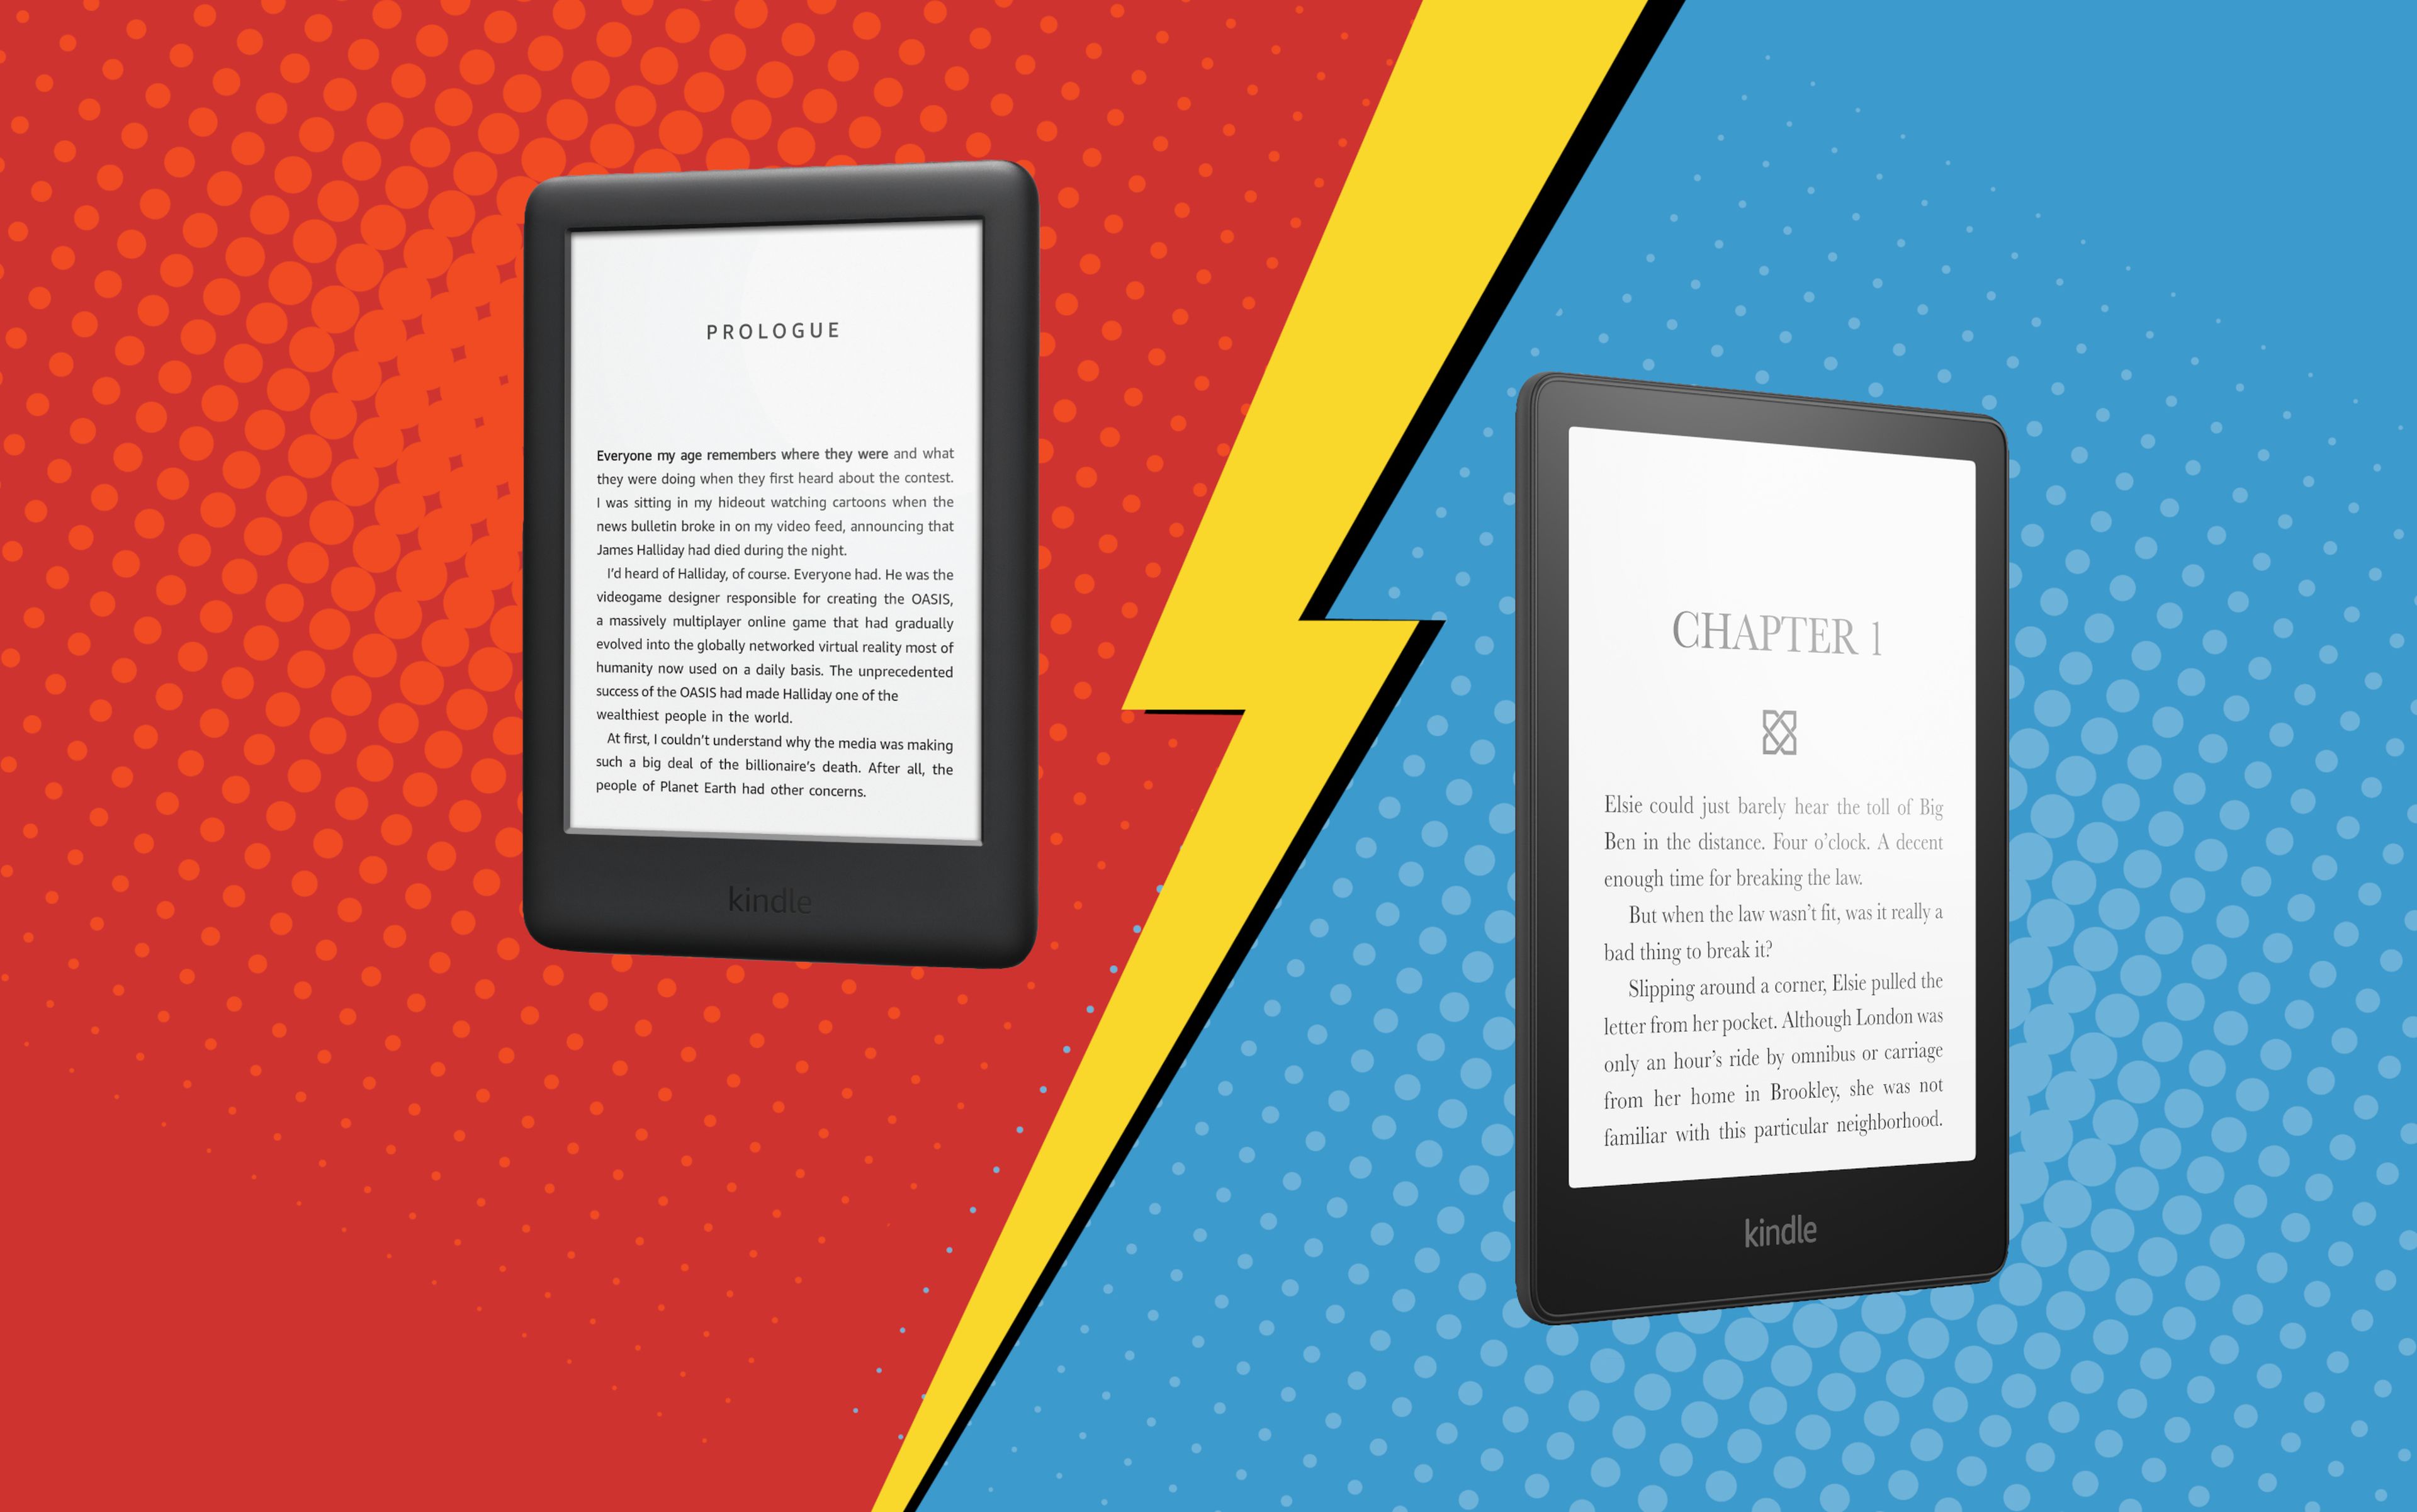 Qué Kindle comprar? Comparativa y diferencias